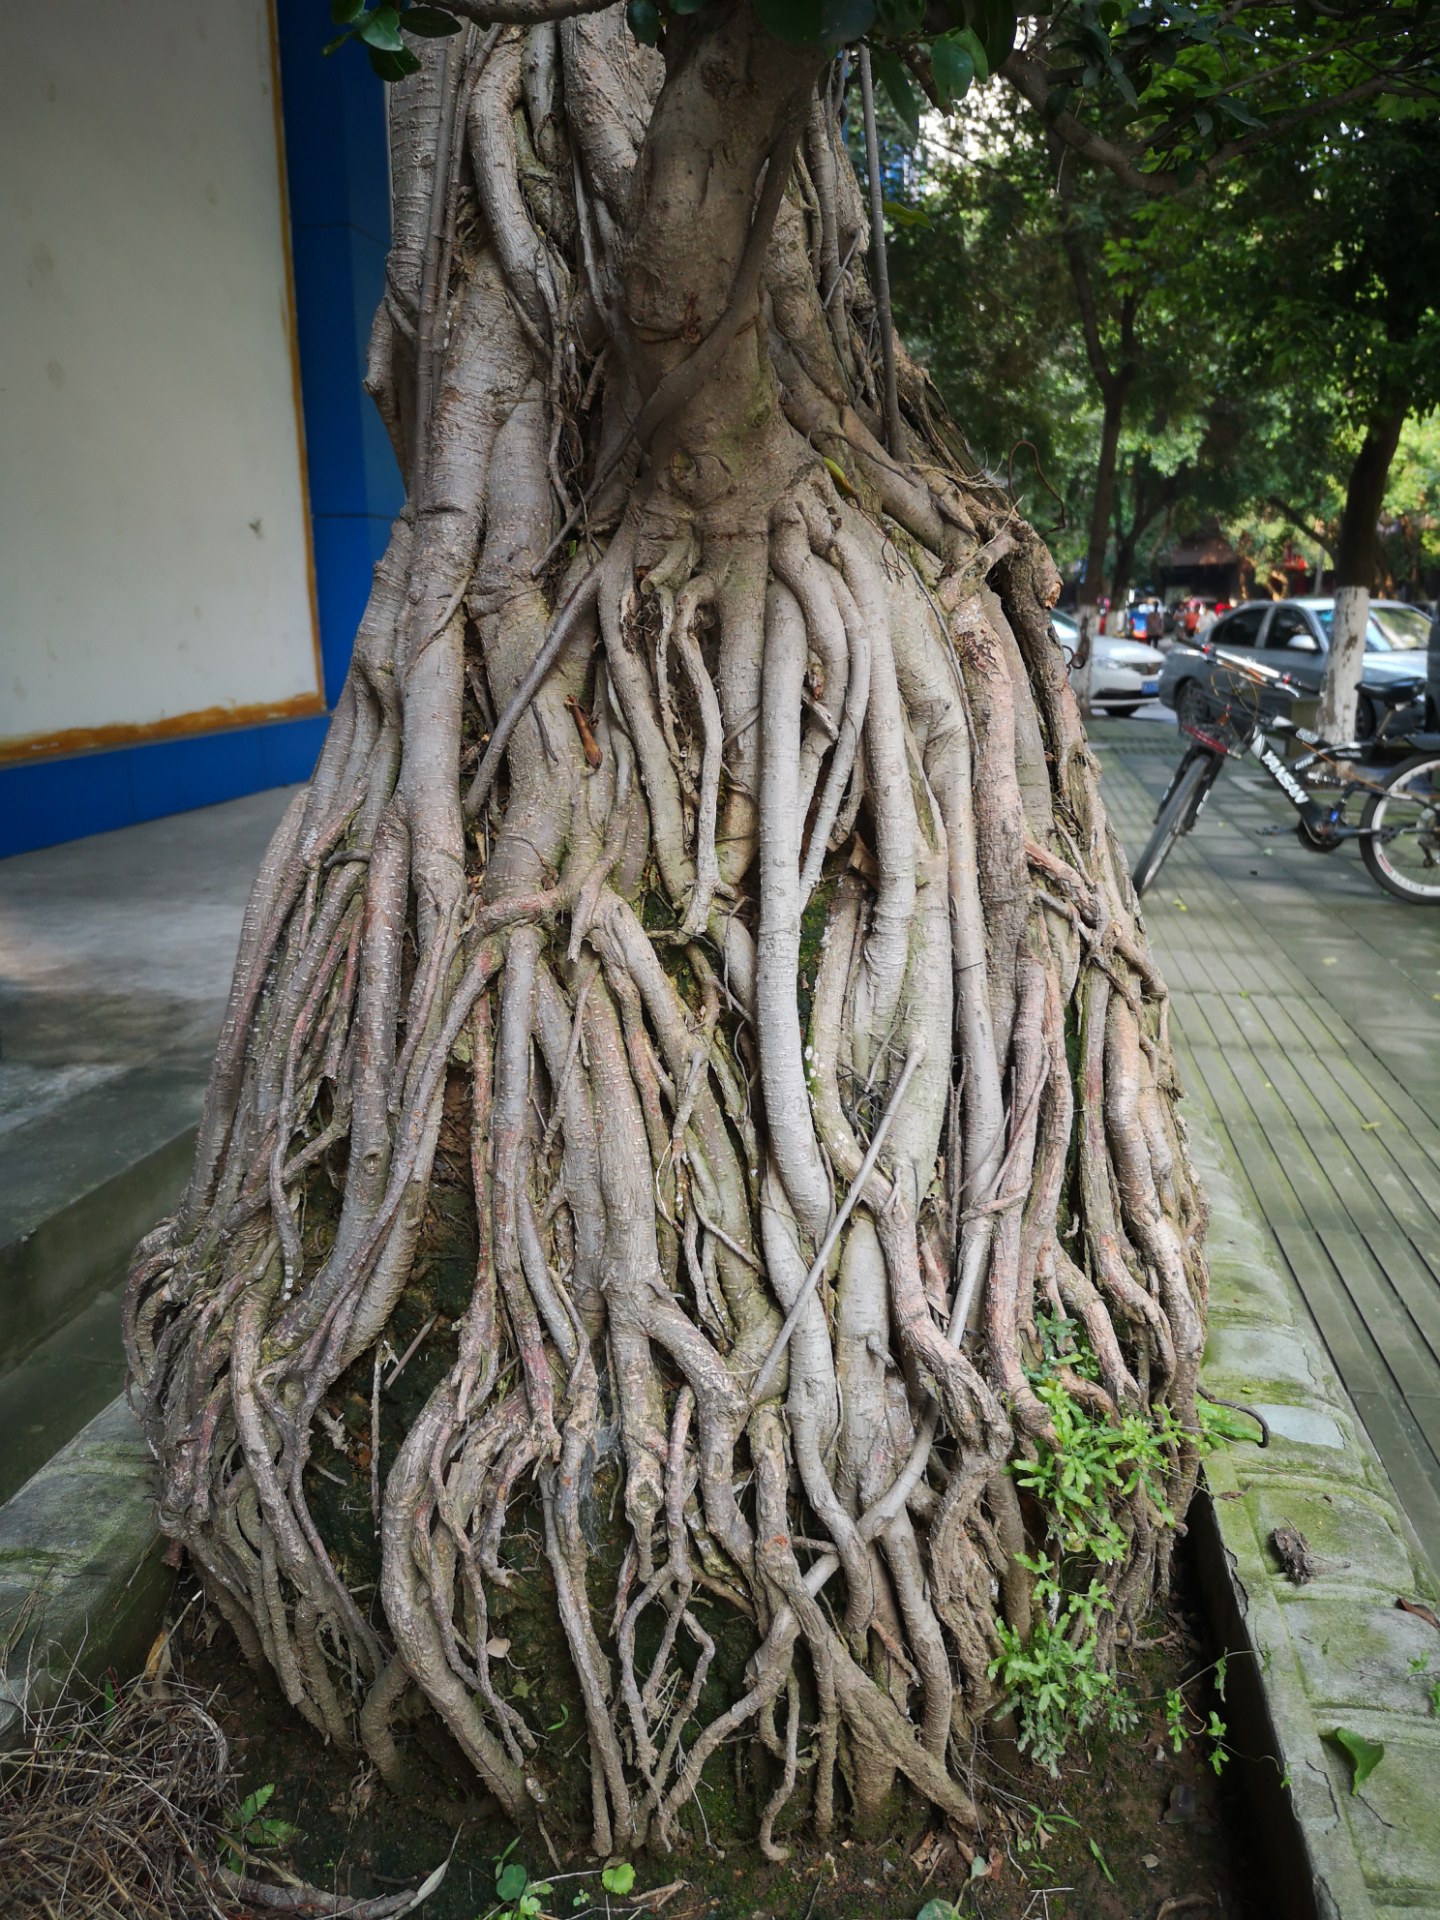 叶子稀少,造型不理想;但这树的根造型特别,又细又多,根系非常发达真是